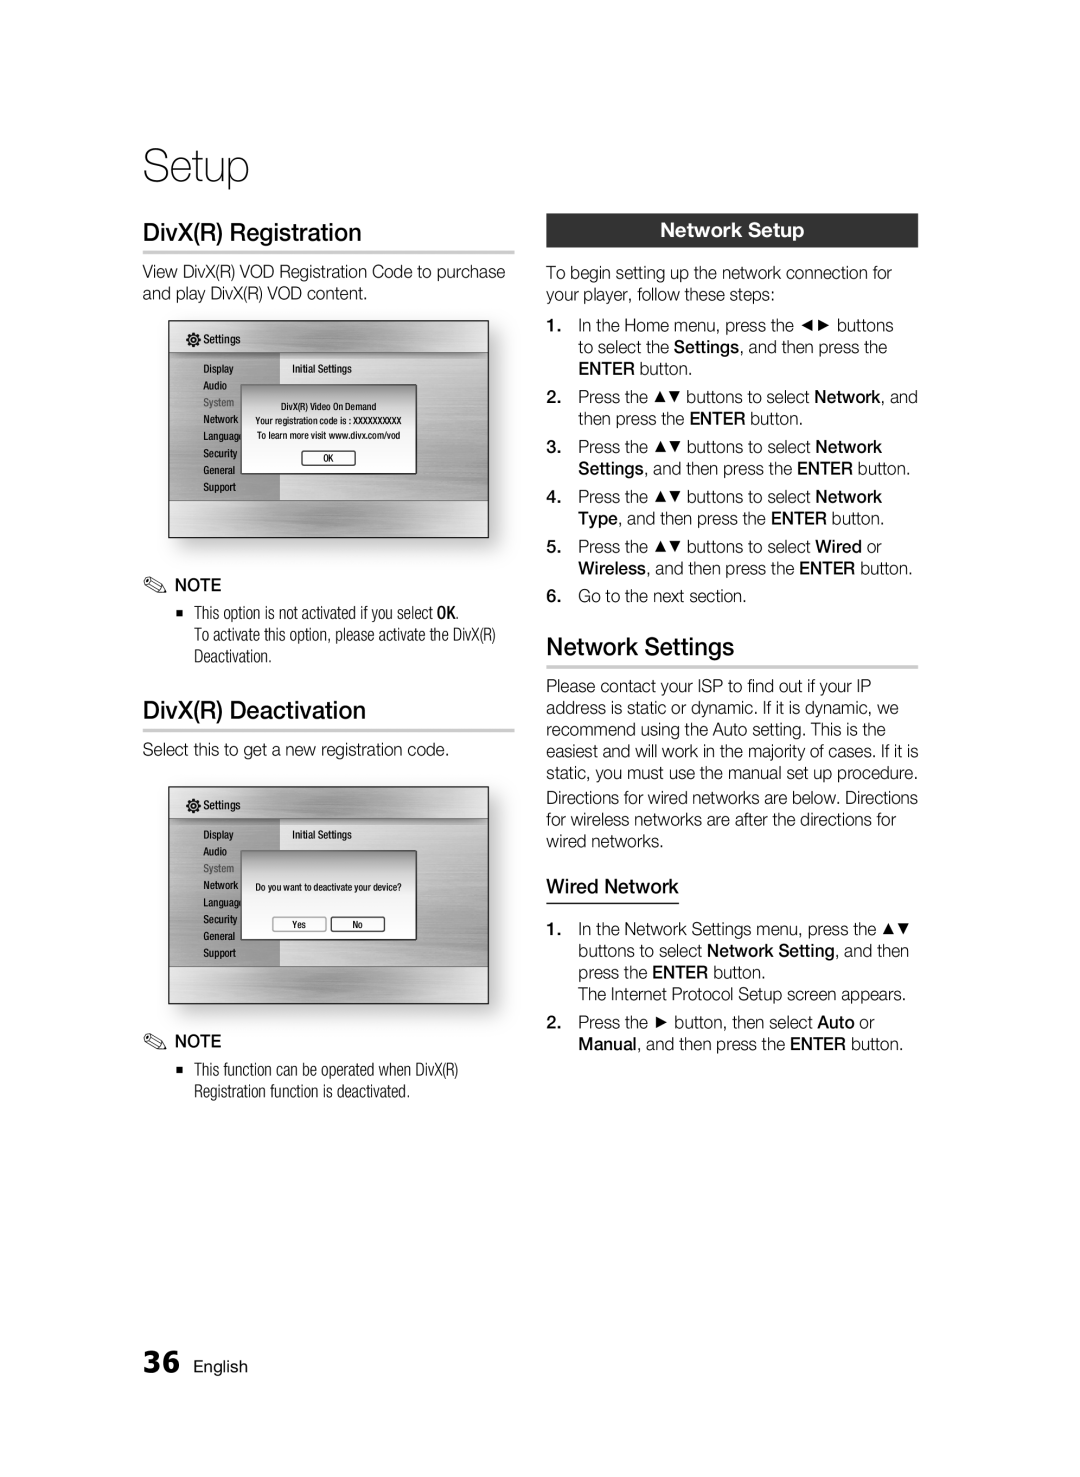 Samsung BD-C6300 user manual DivXR Registration, DivXR Deactivation, Network Settings, Network Setup, Wired Network 